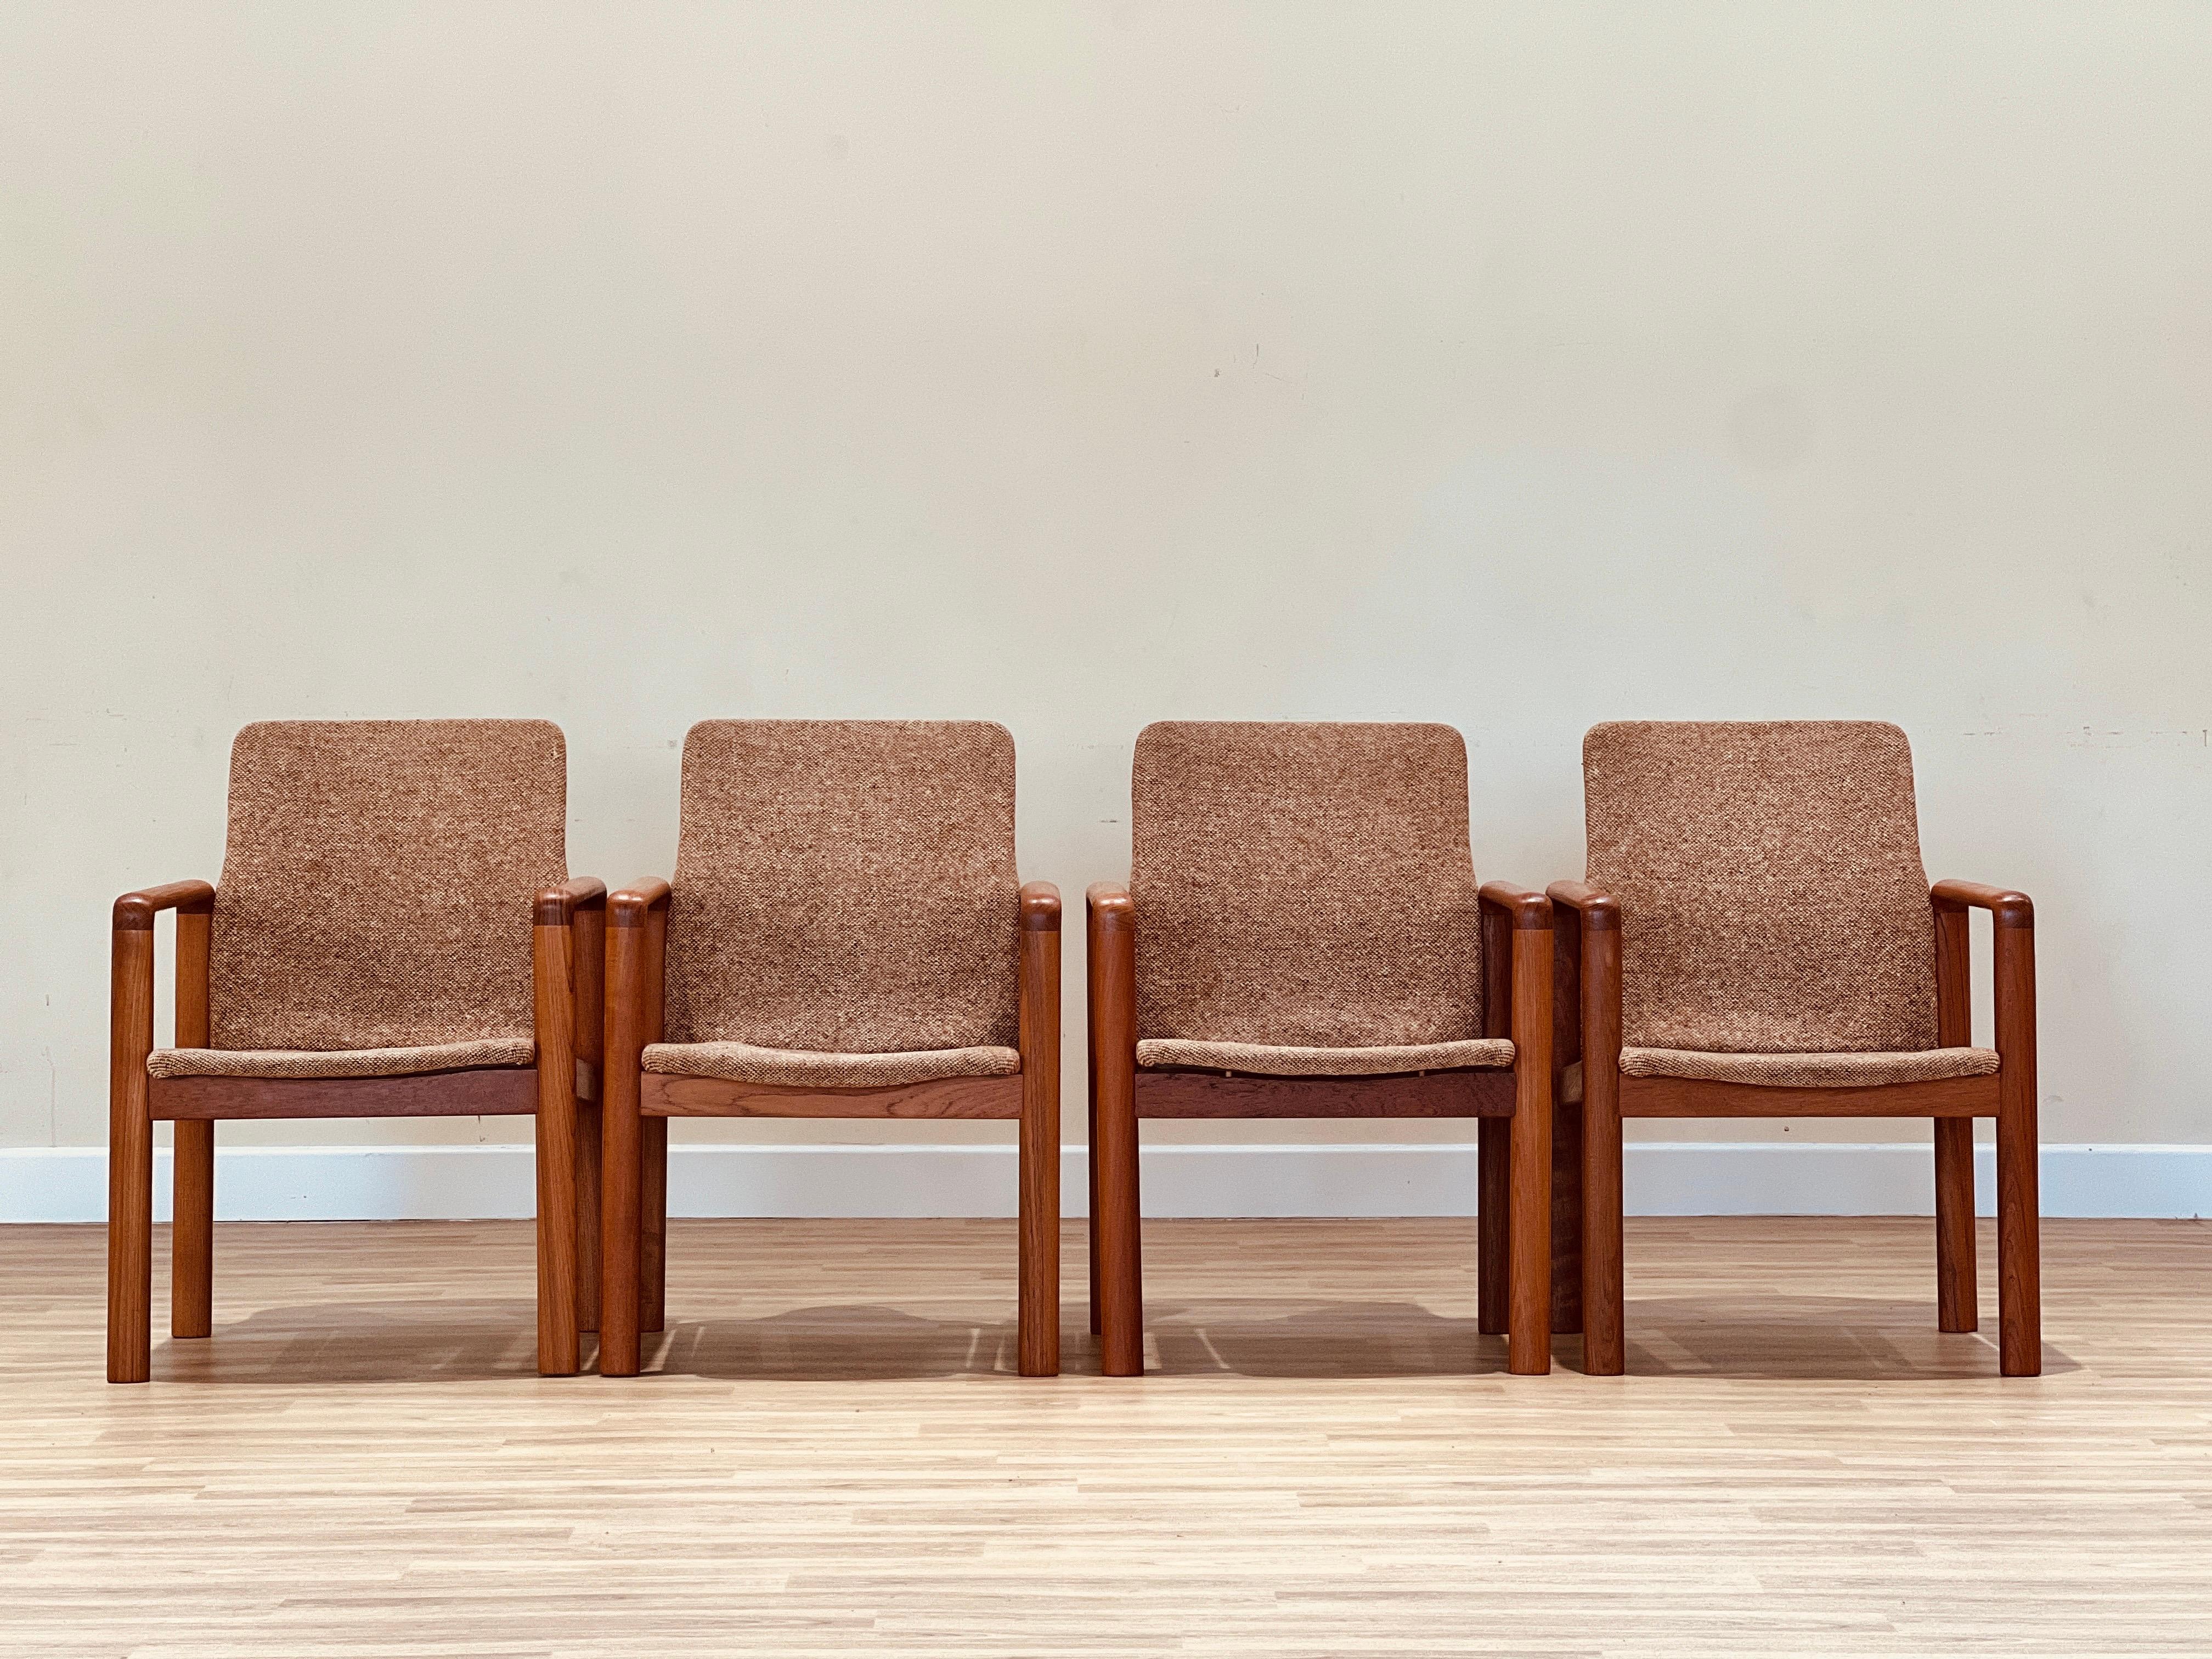 Dieses atemberaubende Set aus vier Sesseln ist ein wahres Kunstwerk. Sie wurden in den frühen 70er Jahren von dem renommierten dänischen Möbelhersteller Dyrlum entworfen und sind der Inbegriff von Raffinesse und Stil. Die als Konferenzstühle